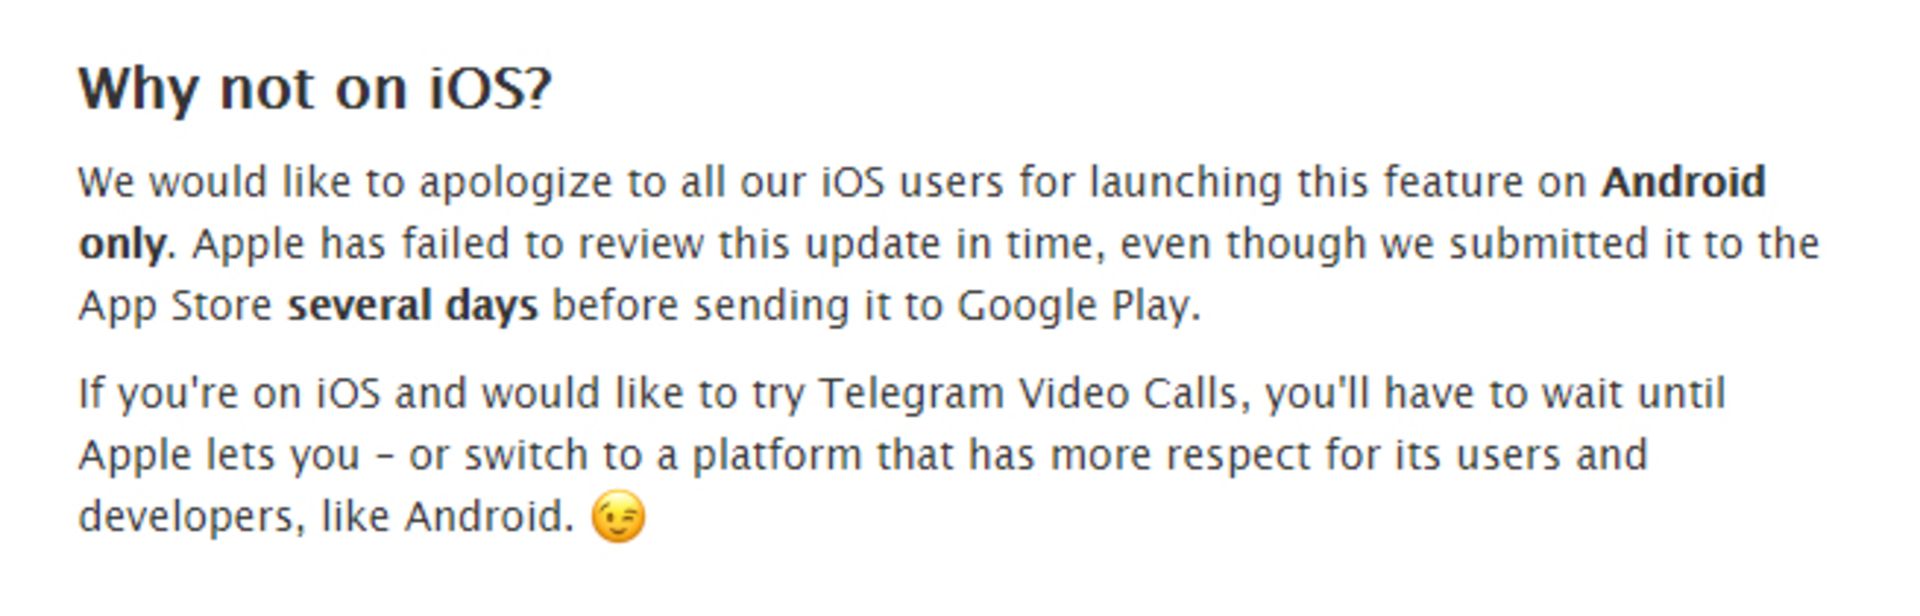 امکان تماس تصویری تلگرام - پست بلاگ تلگرام در مورد iOS